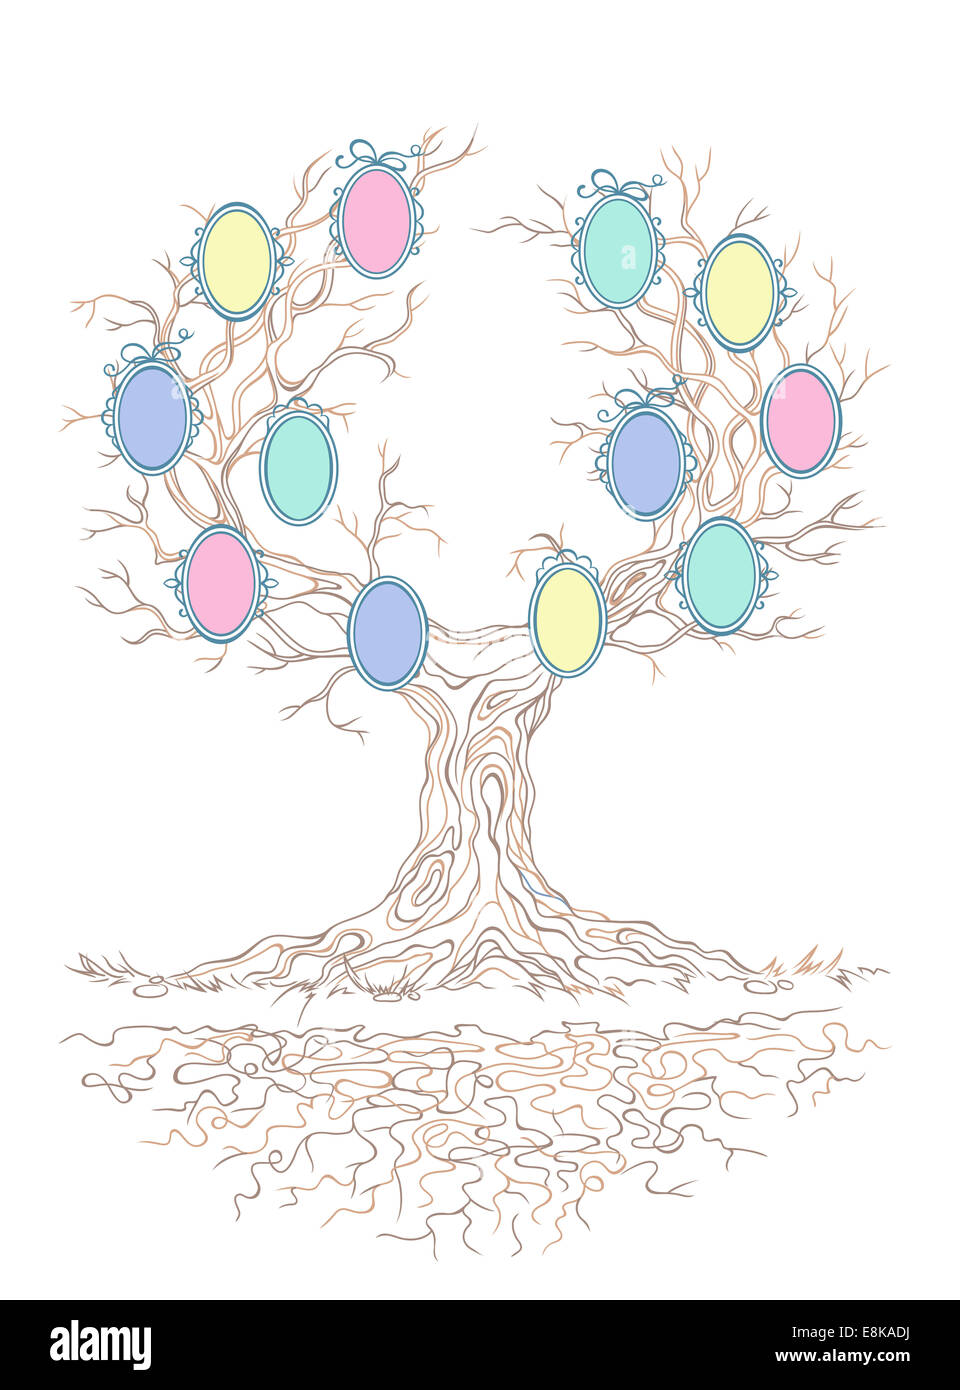 Grafico lineare antico e grande stantio branchy tree con colori caramella di cornici per i ritratti di famiglia,isolati su sfondo bianco Foto Stock